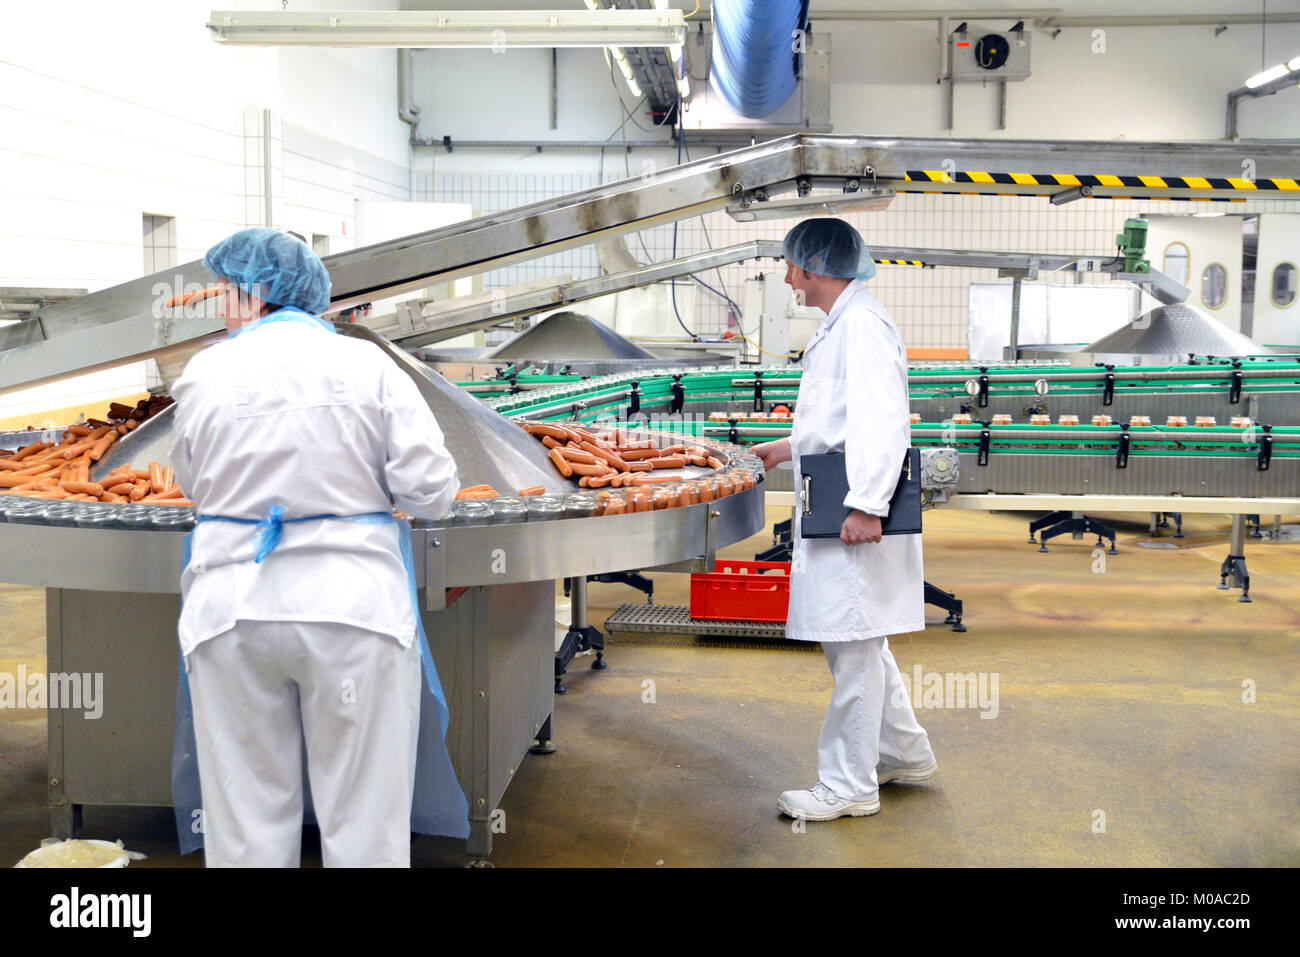 Le contrôle de la qualité dans une usine de traitement de la viande - production de saucisses dans une usine Banque D'Images